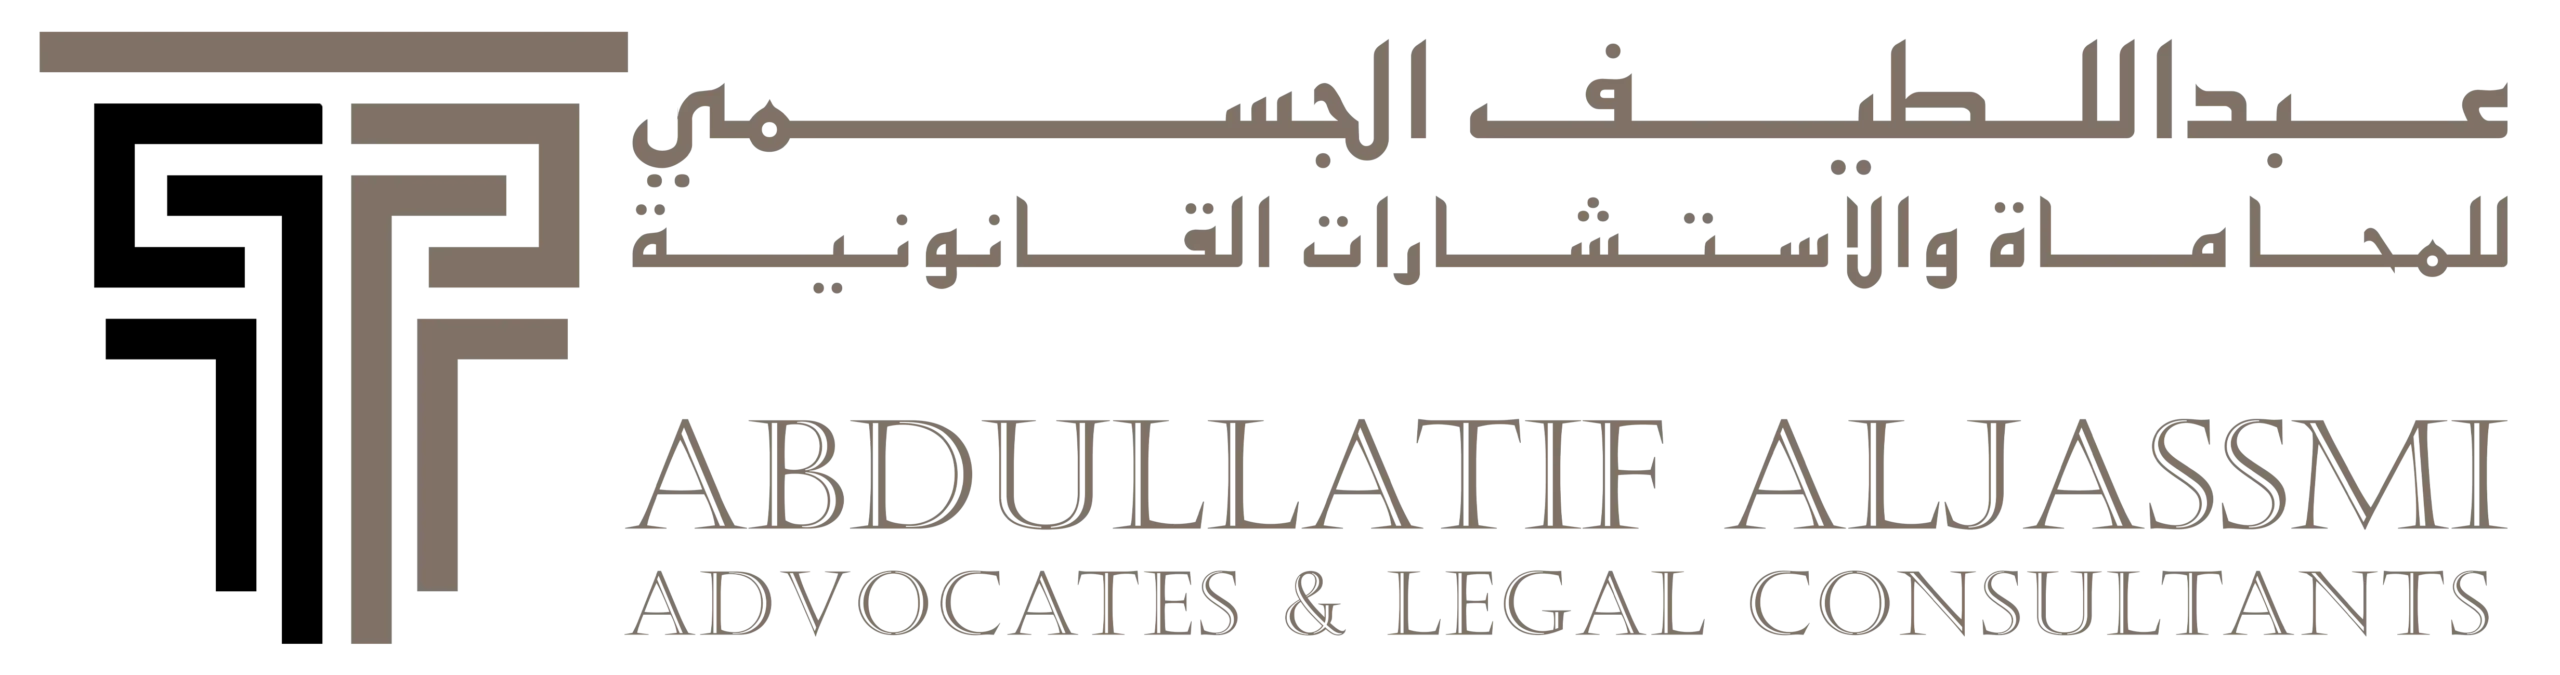 Abdullatif Al Jassmi | عبد اللطيف الجسمي للمحاماة والاستشارات القانونية